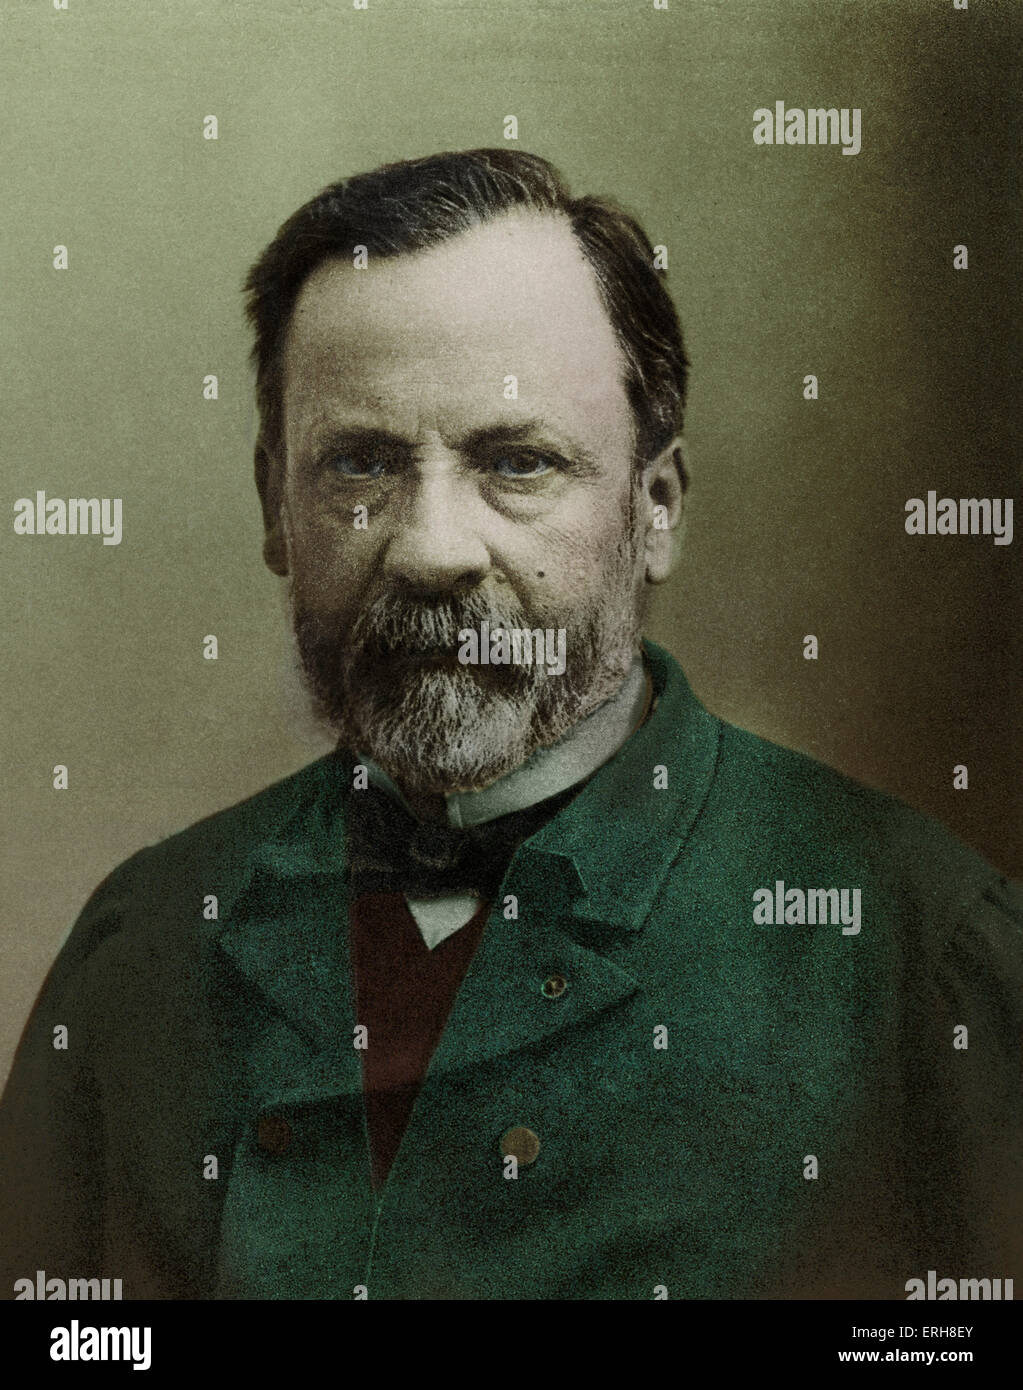 Louis Pasteur - ritratto - chimico francese, biologo e fondatore della moderna batteriologia -27 dicembre 1822 - 28 Settembre 1895 Foto Stock